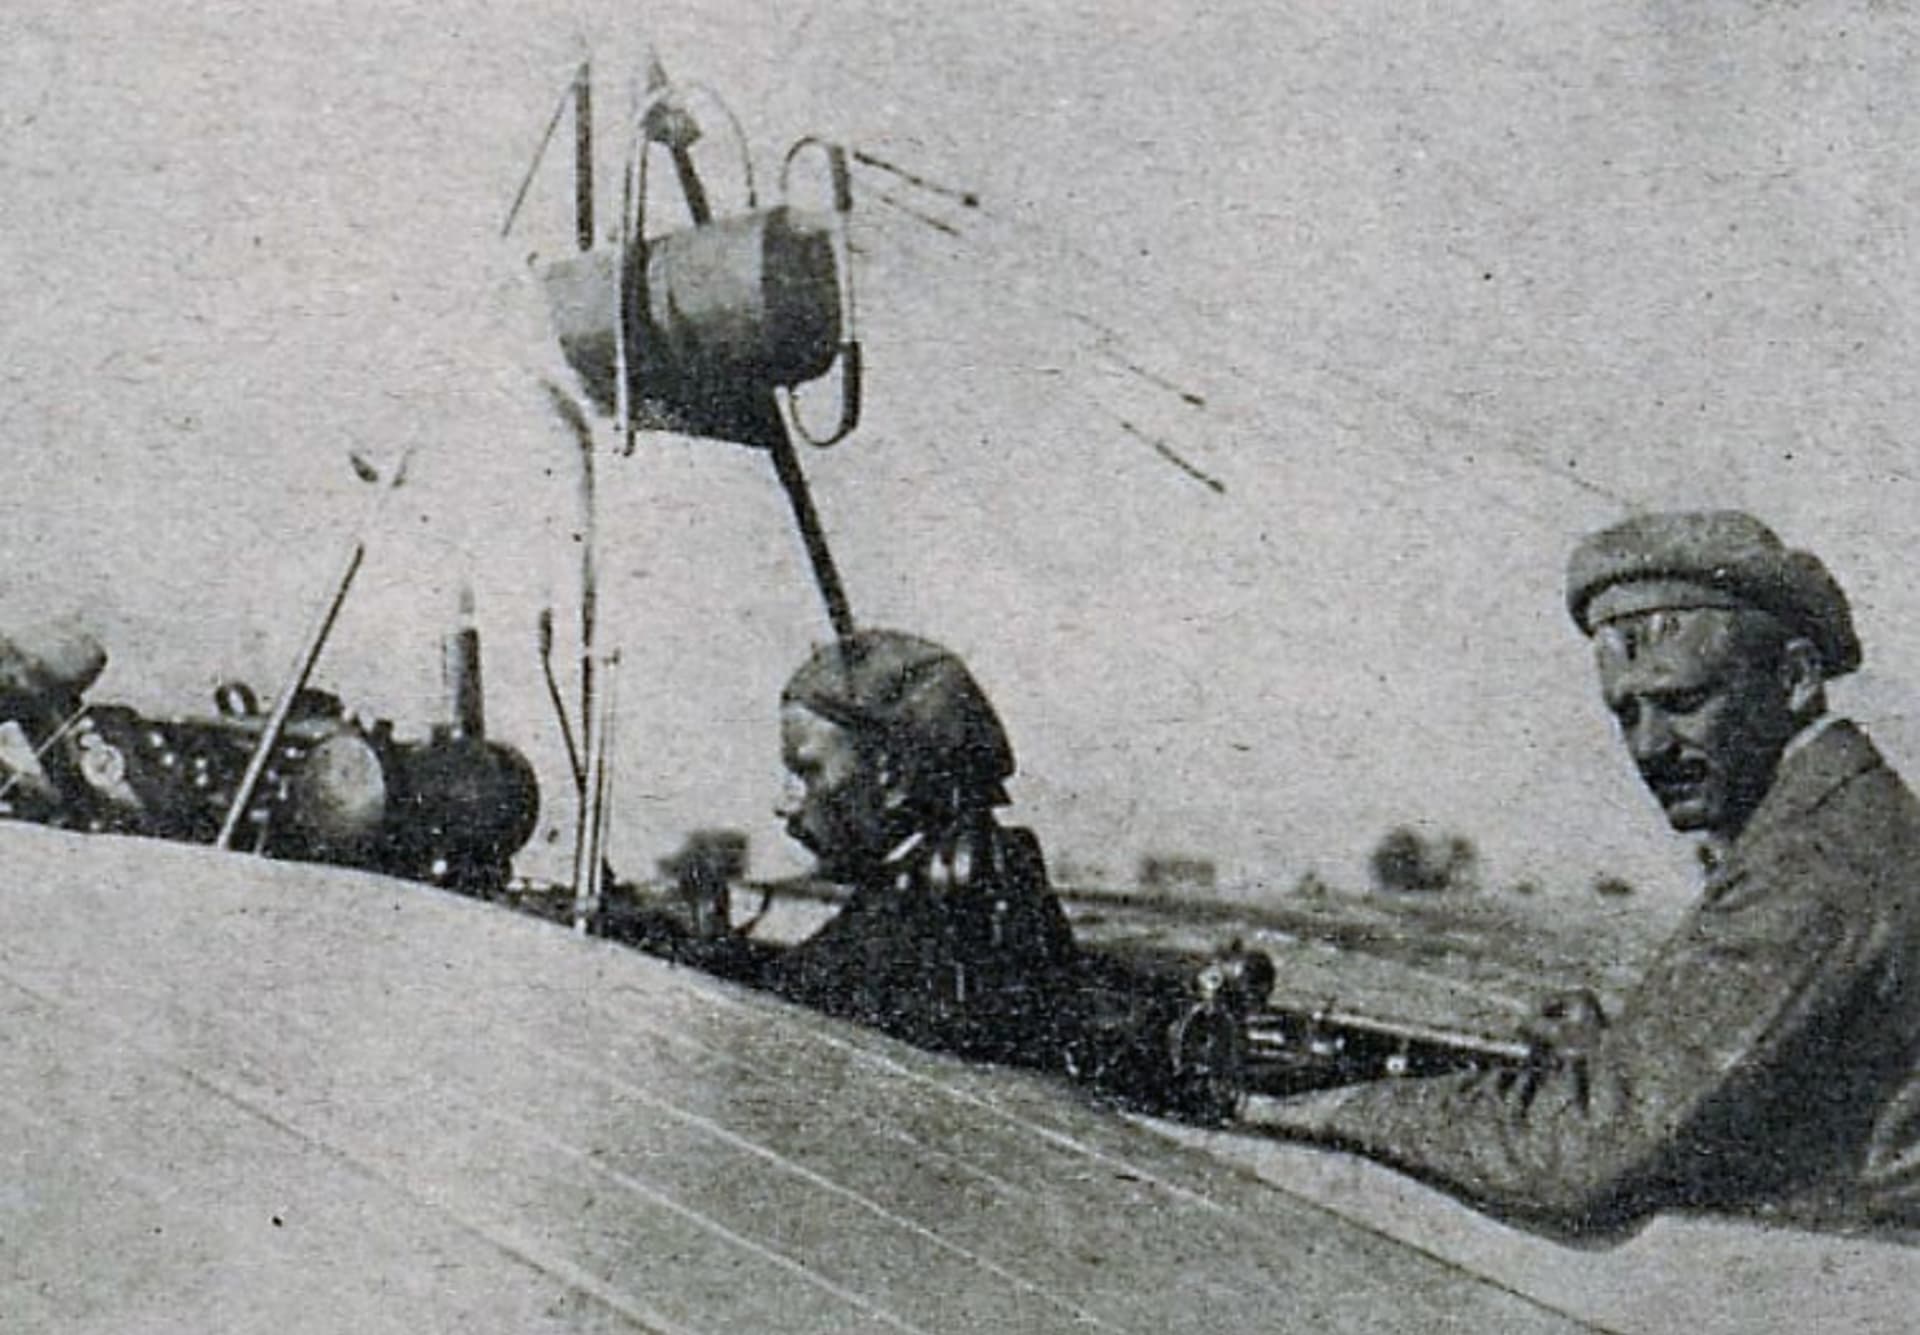 Jan Kašpar na svém stroji s bratrancem Čihákem. Z knihy Z dějin naší vzduchoplavby z roku 1927.